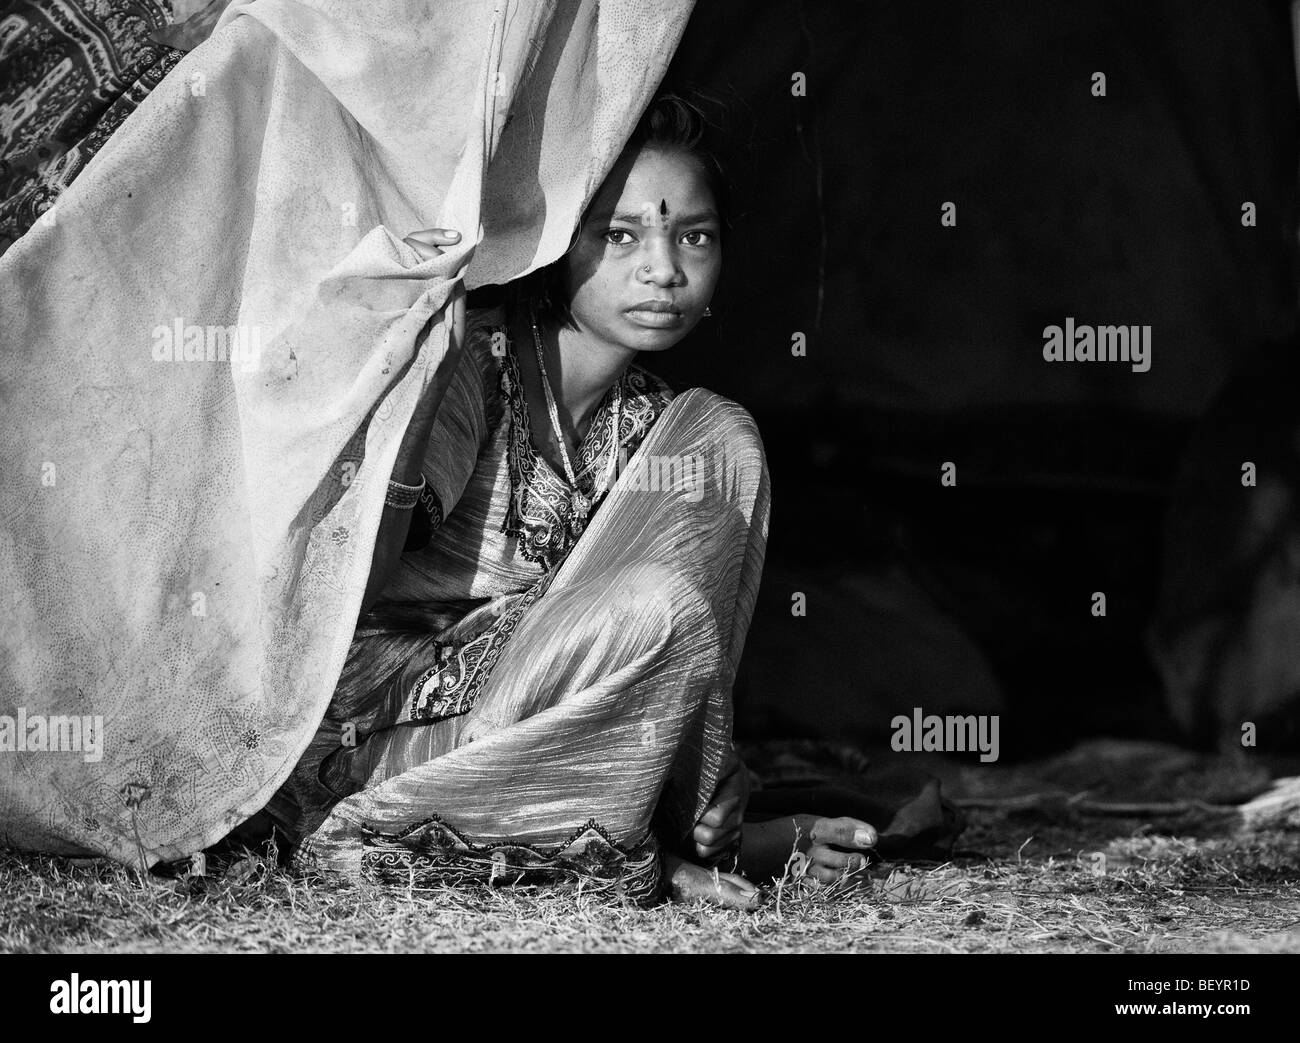 Les indiens pauvres fille assise à l'extérieur de sa tente à la maison. Monochrome Banque D'Images